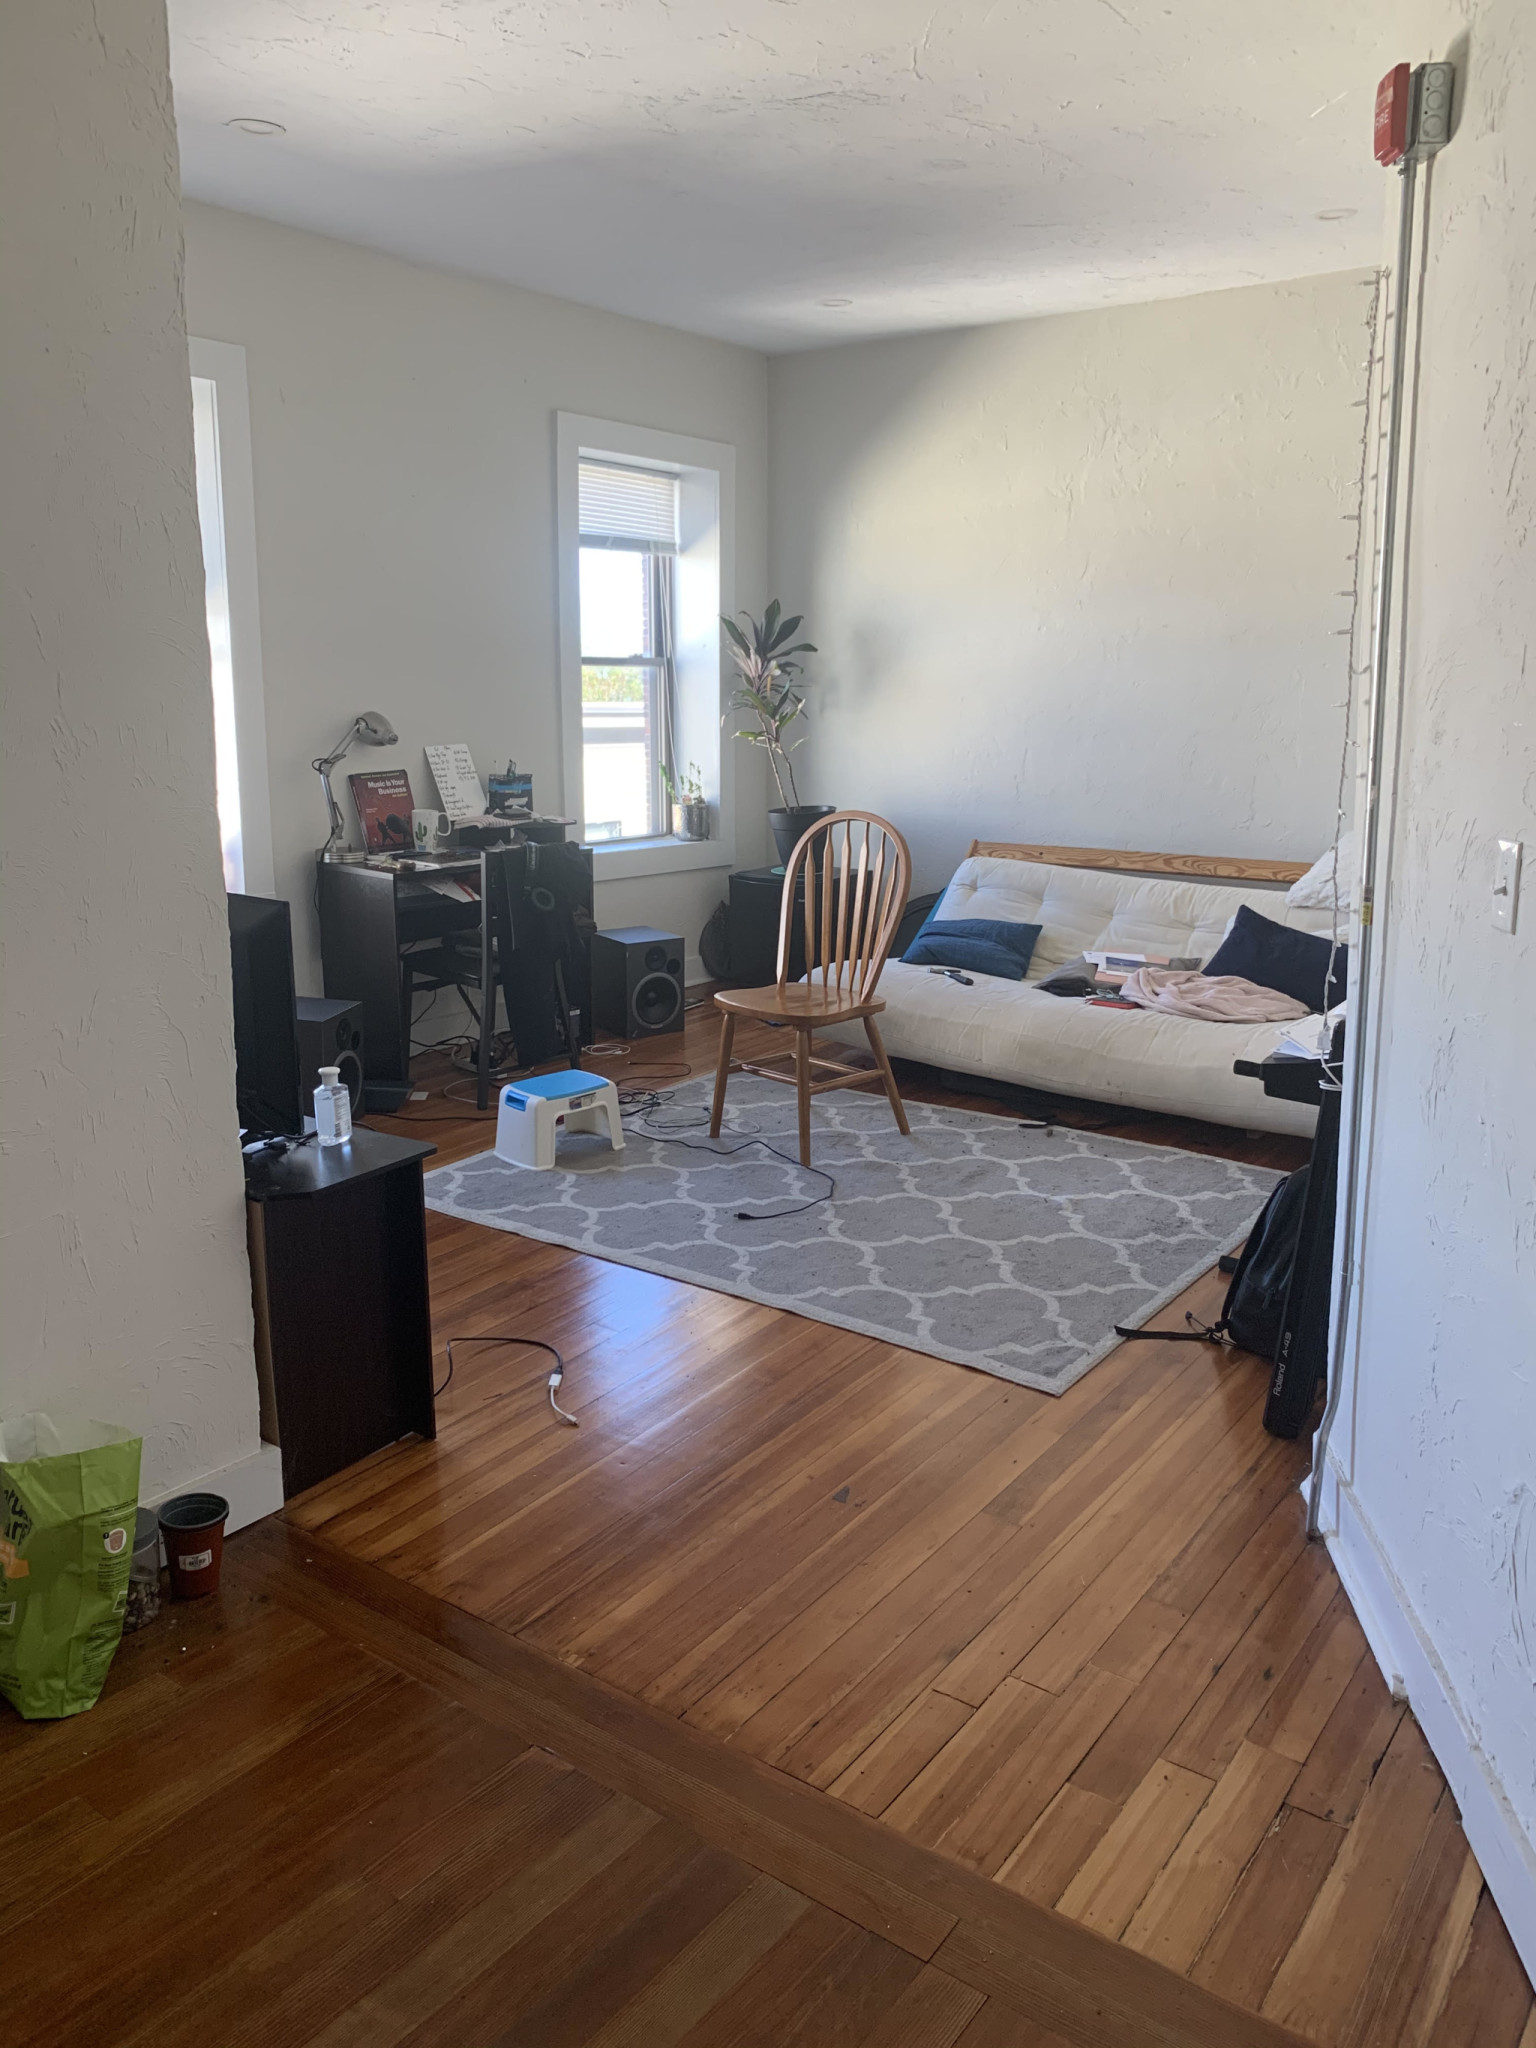 Photos of apartment on Boston St.,Boston MA 02125